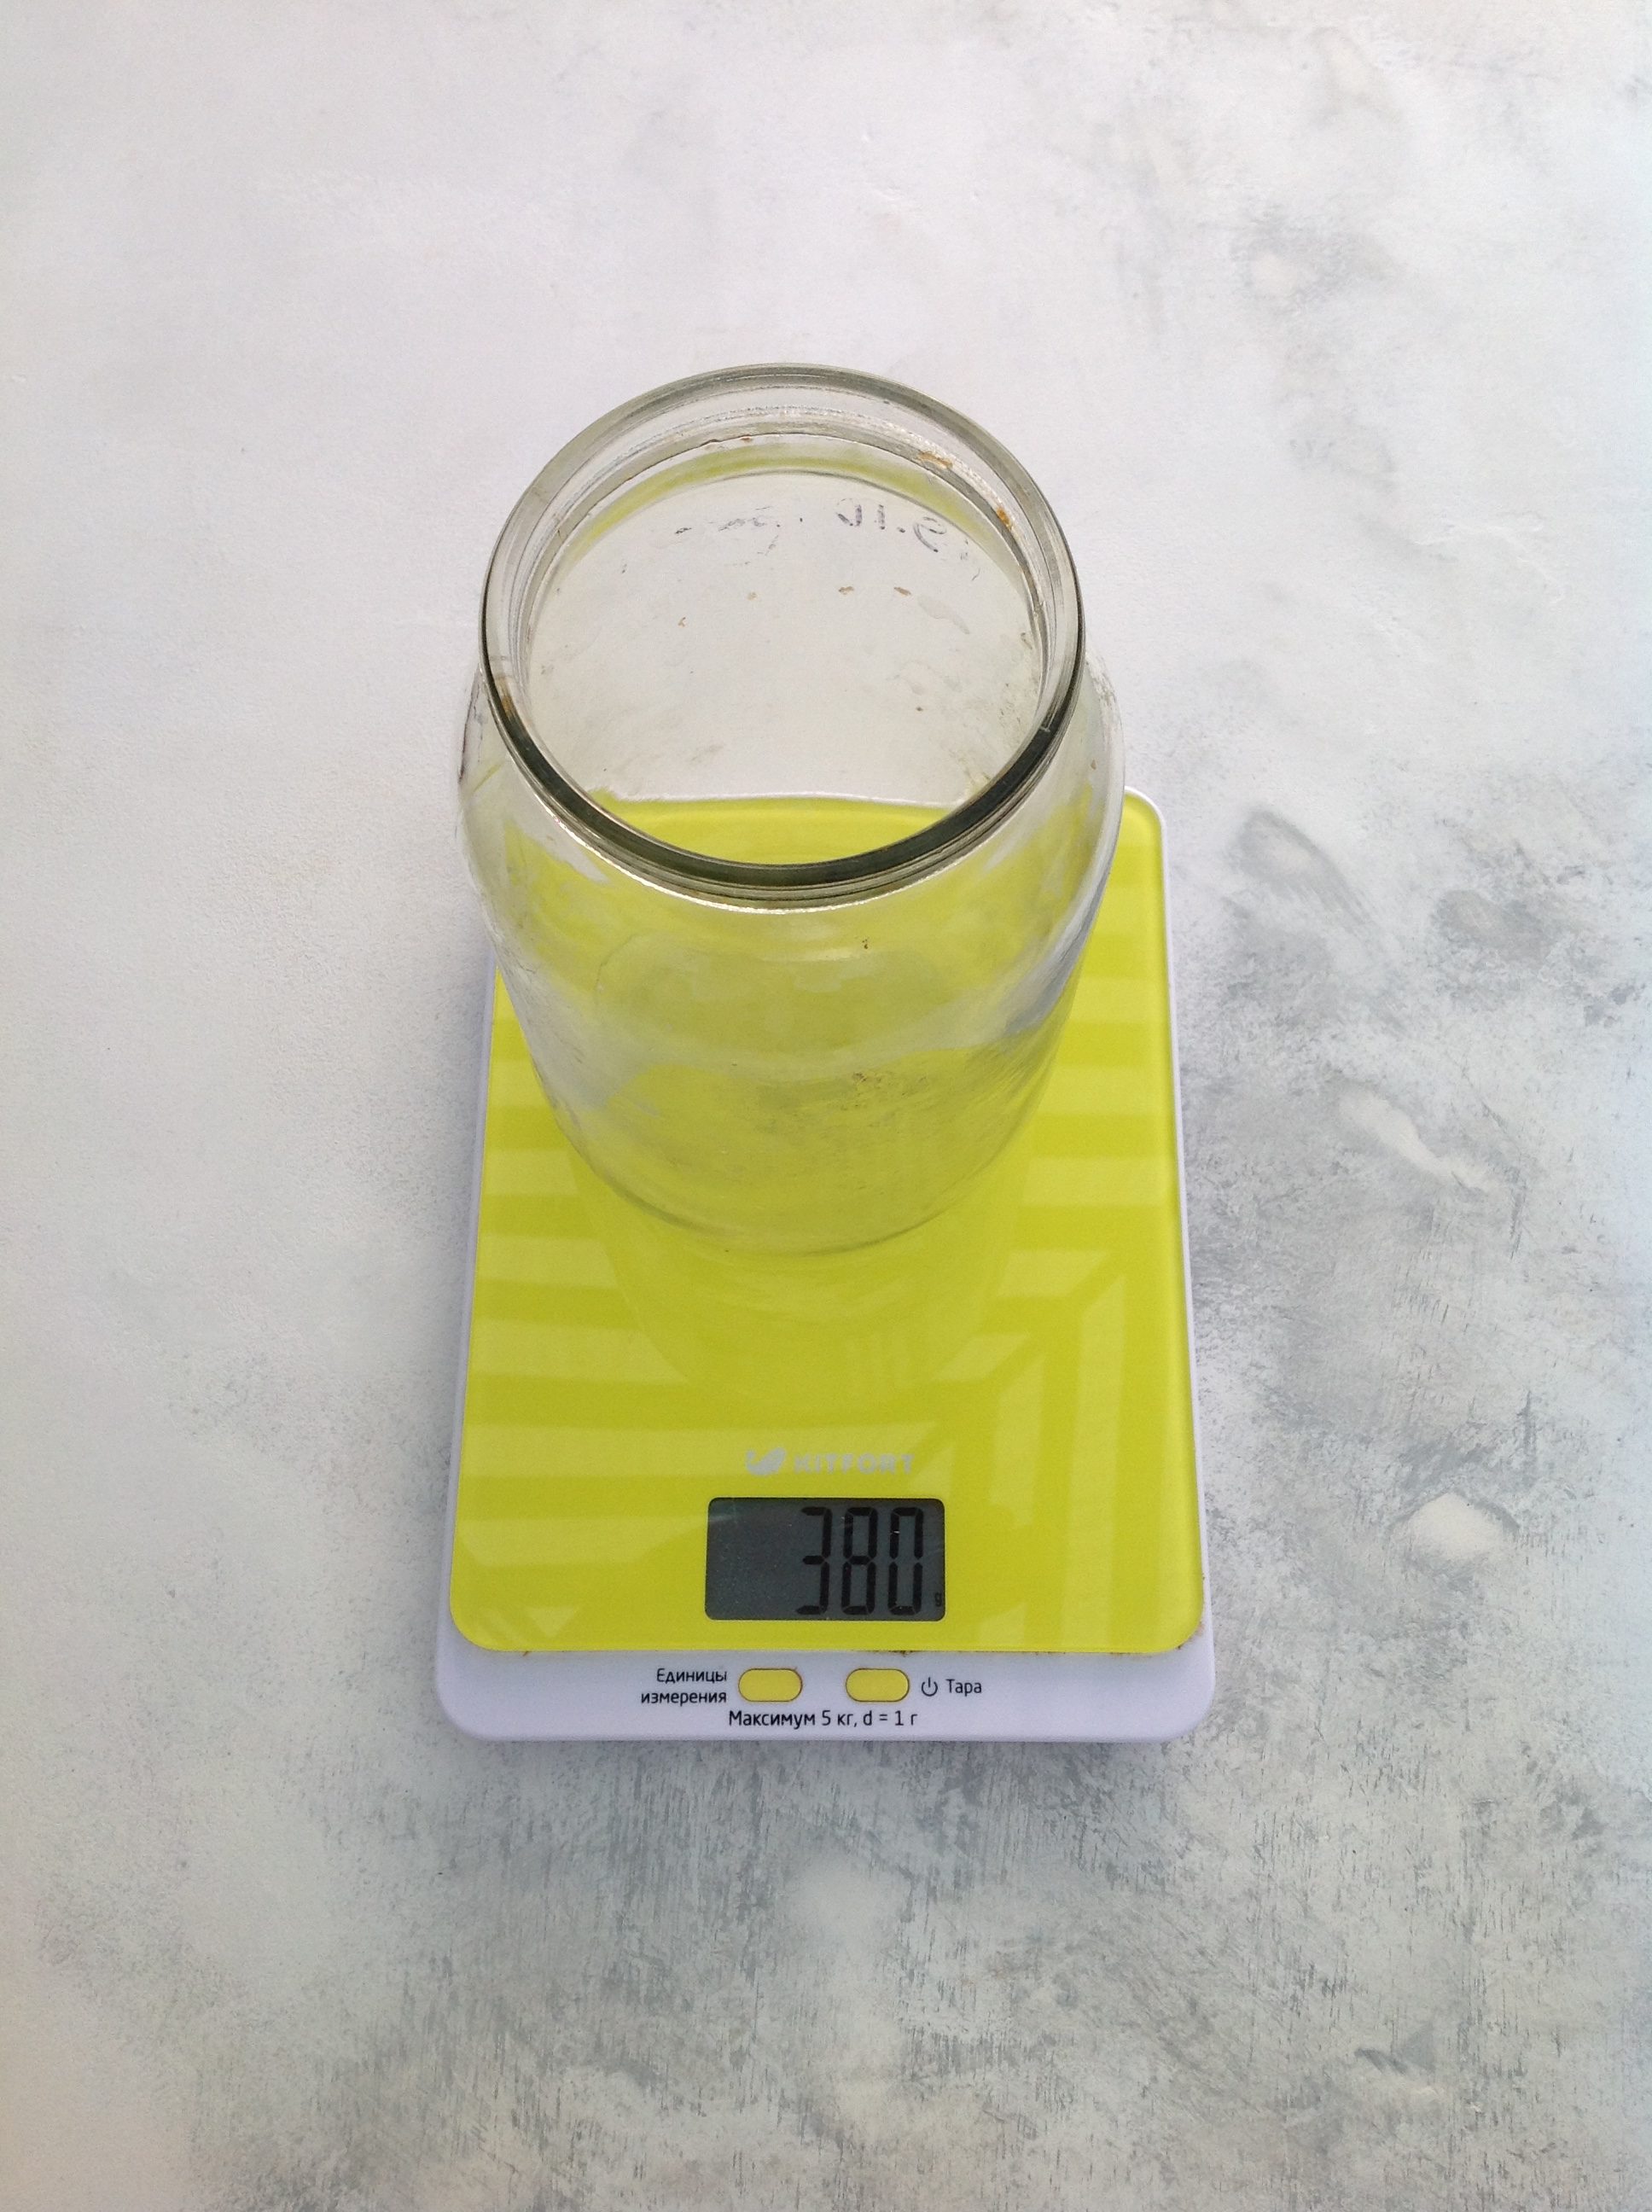 Wie viel wiegt ein Literglas (1 Liter)?